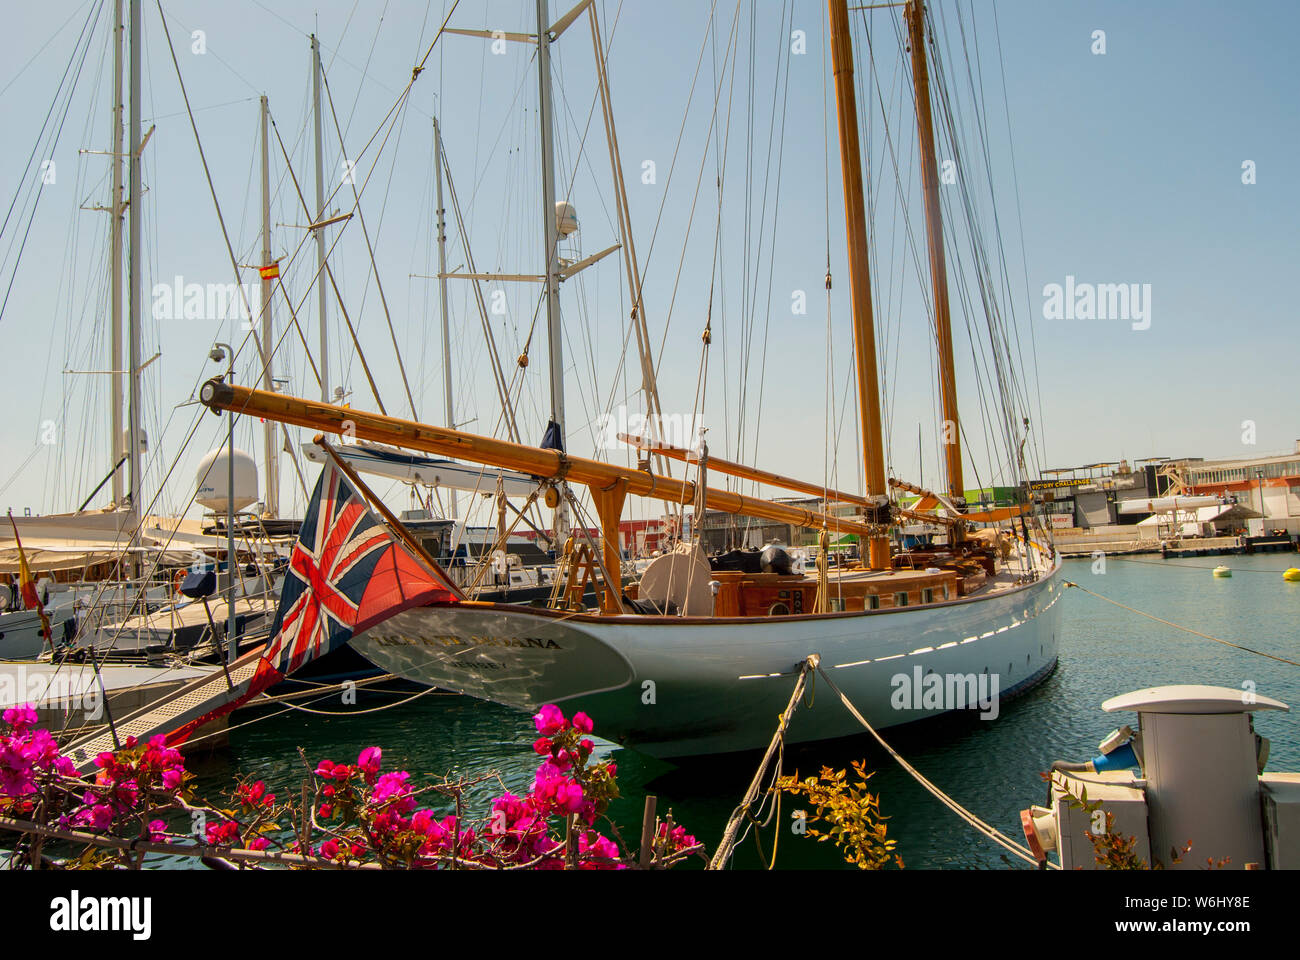 Boats Valencia, Spain Stock Photo